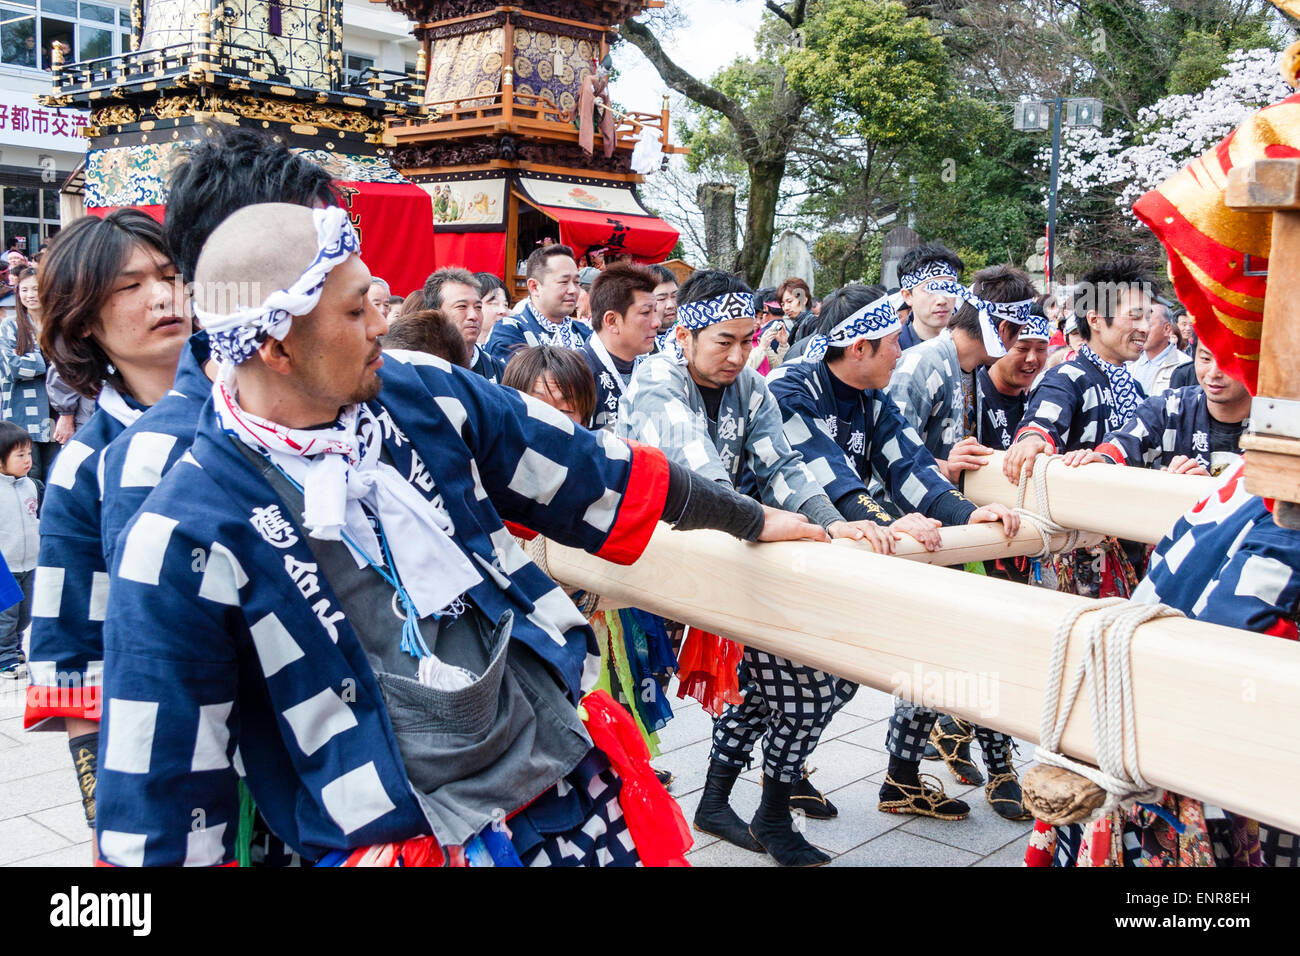 Yama float équipe d'hommes japonais utilisant les longues poutres en bois à l'avant et à l'arrière du flotteur pour le pousser pendant le festival Inuyama de printemps. Banque D'Images